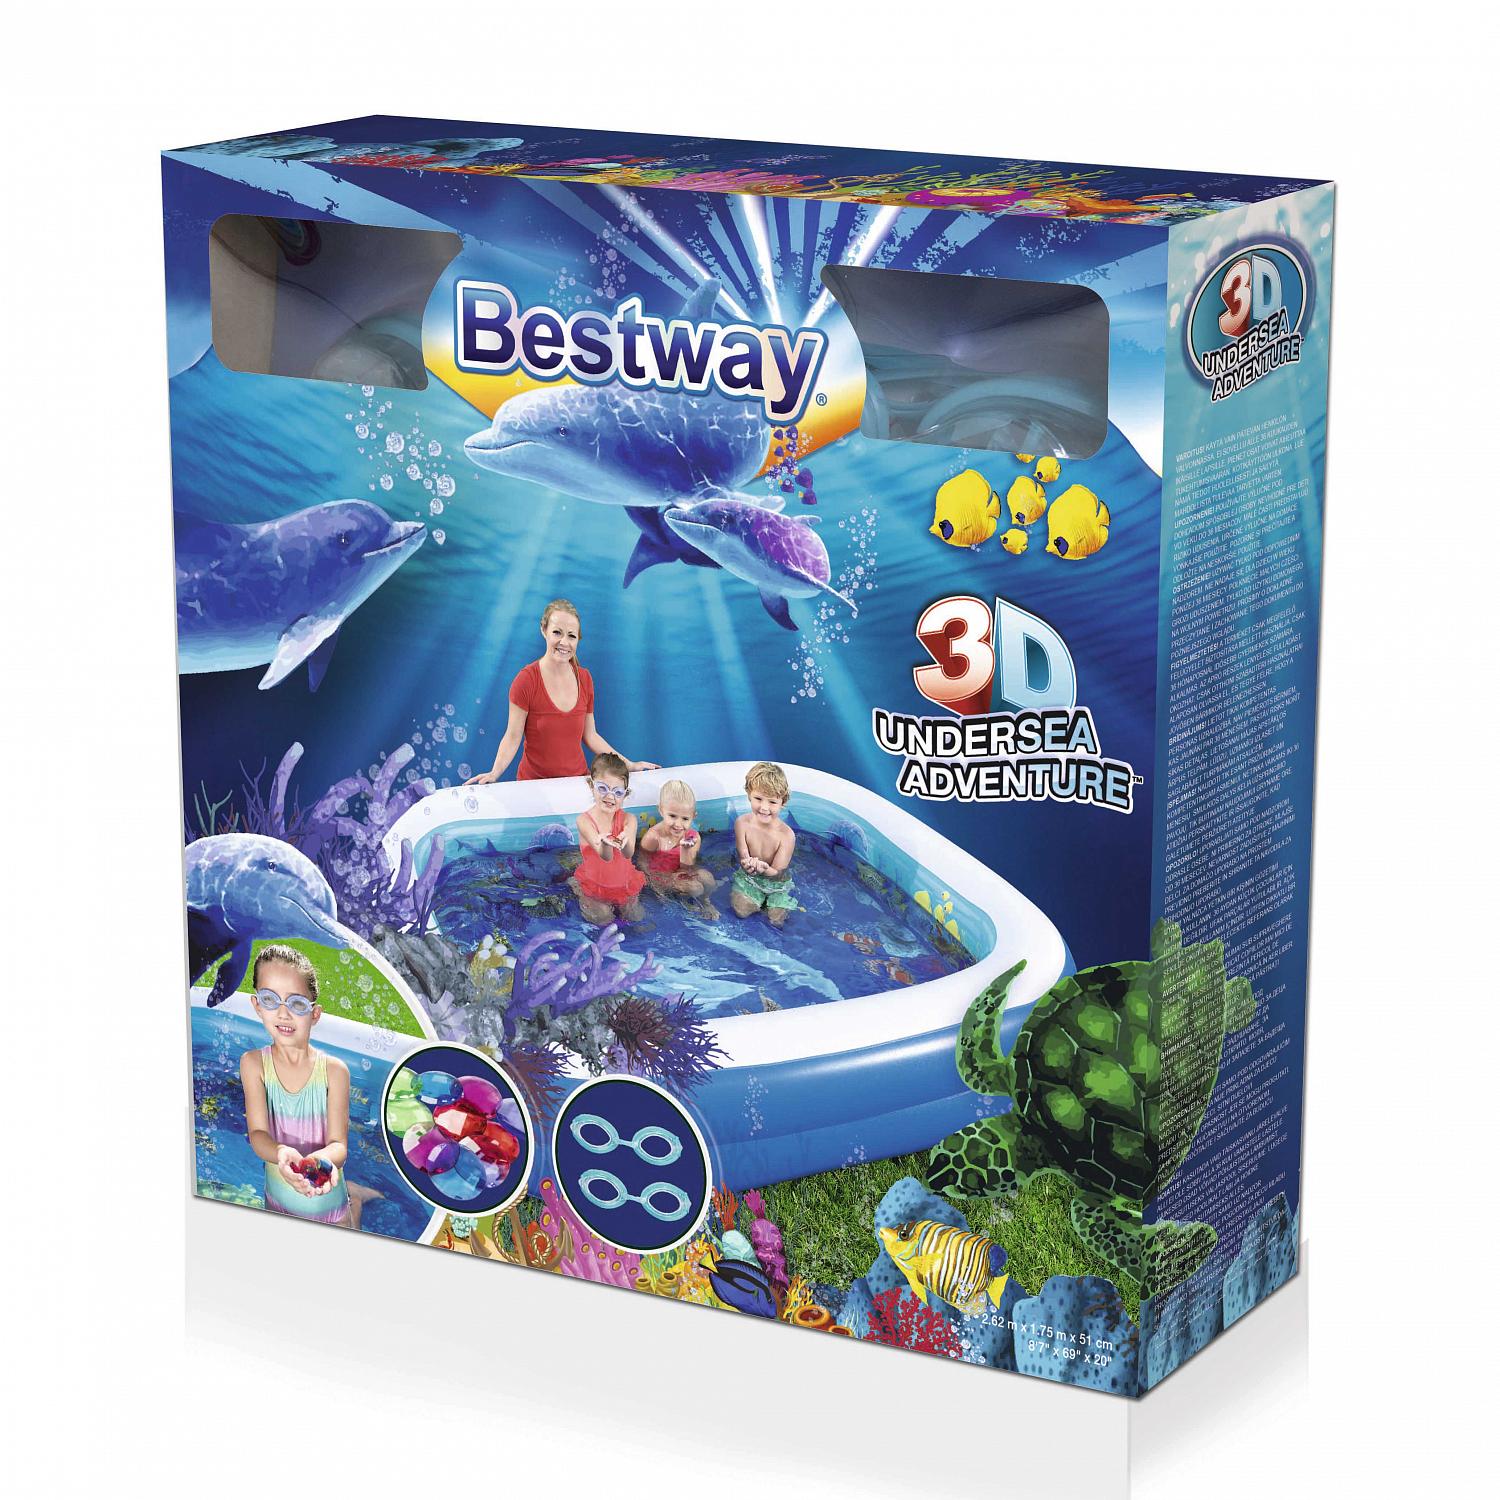 Детский надувной бассейн Bestway 262x175x51см Поиски сокровищ с 3D рисунком и 3D очками, 778л, от 3 лет 54177 1500_1500